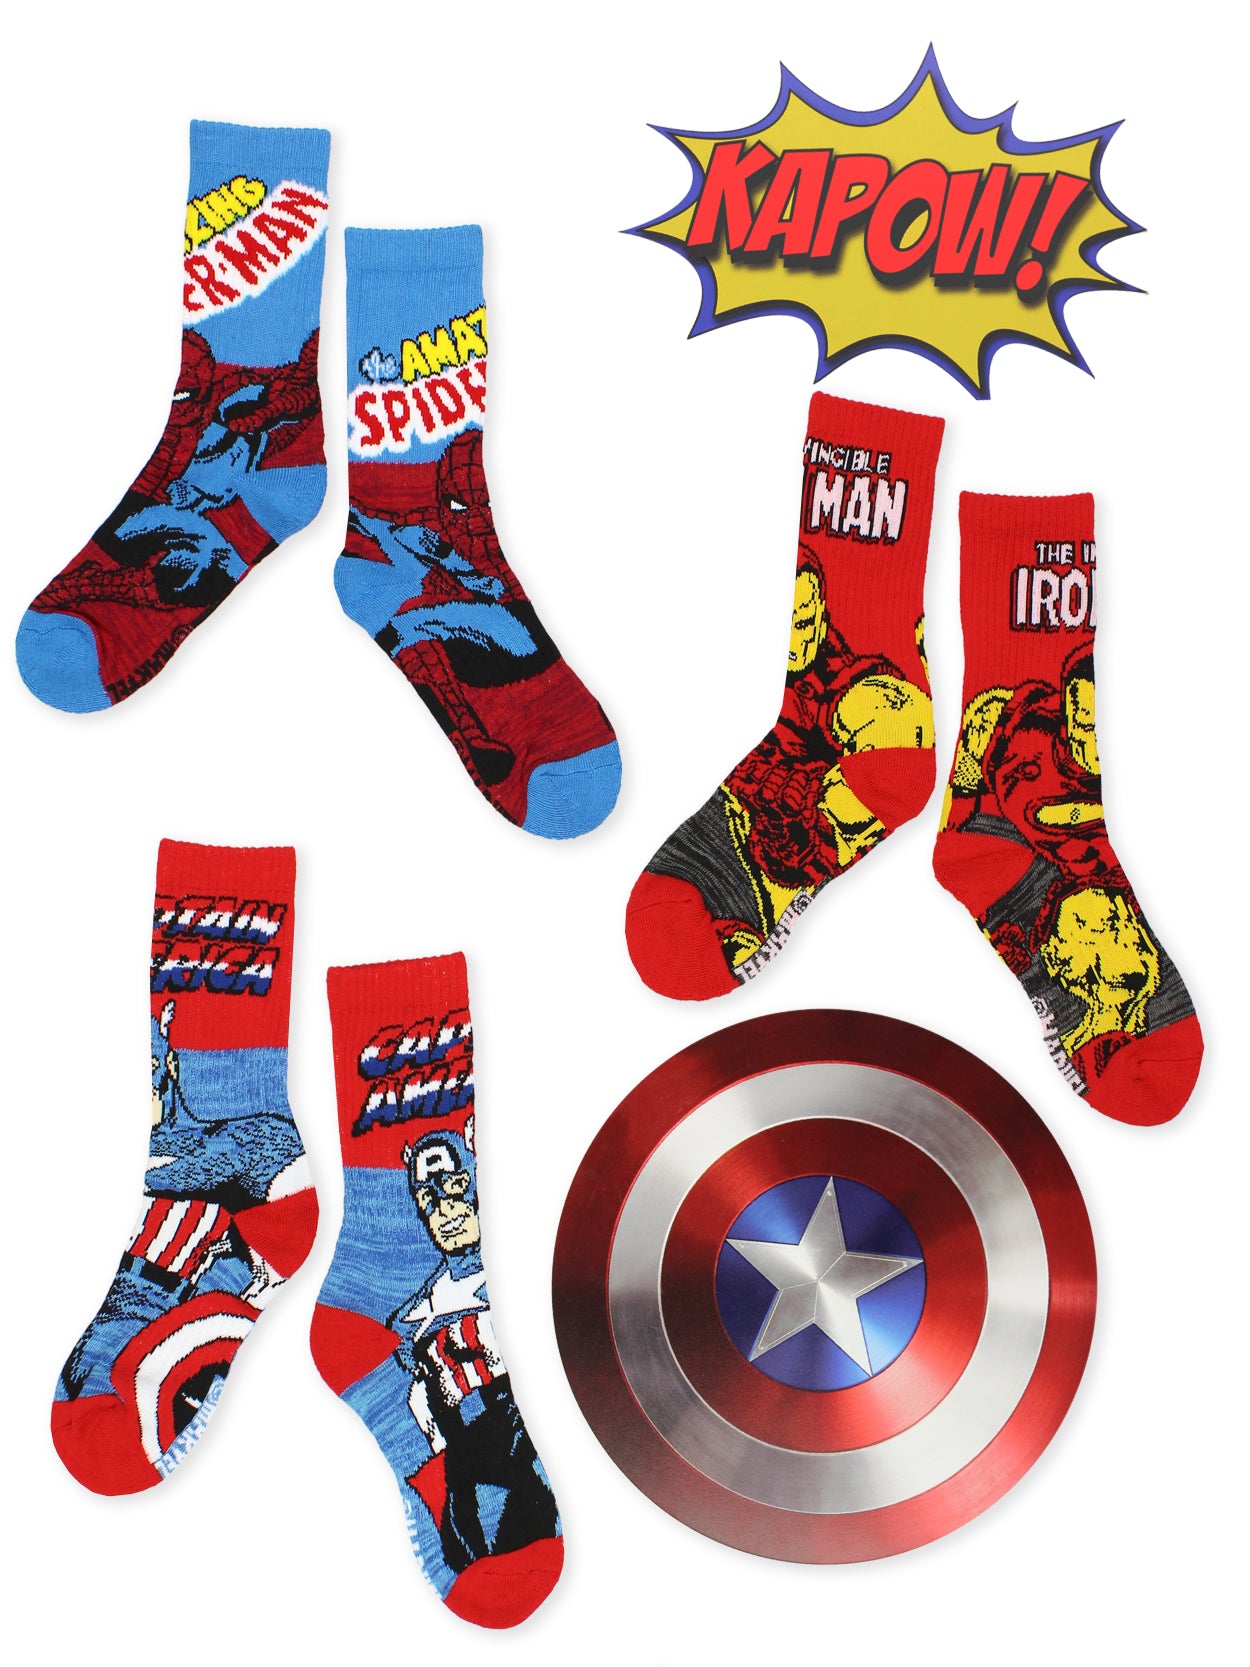 Korean Socks - Avenger Marvel Socks - Iconic Socks